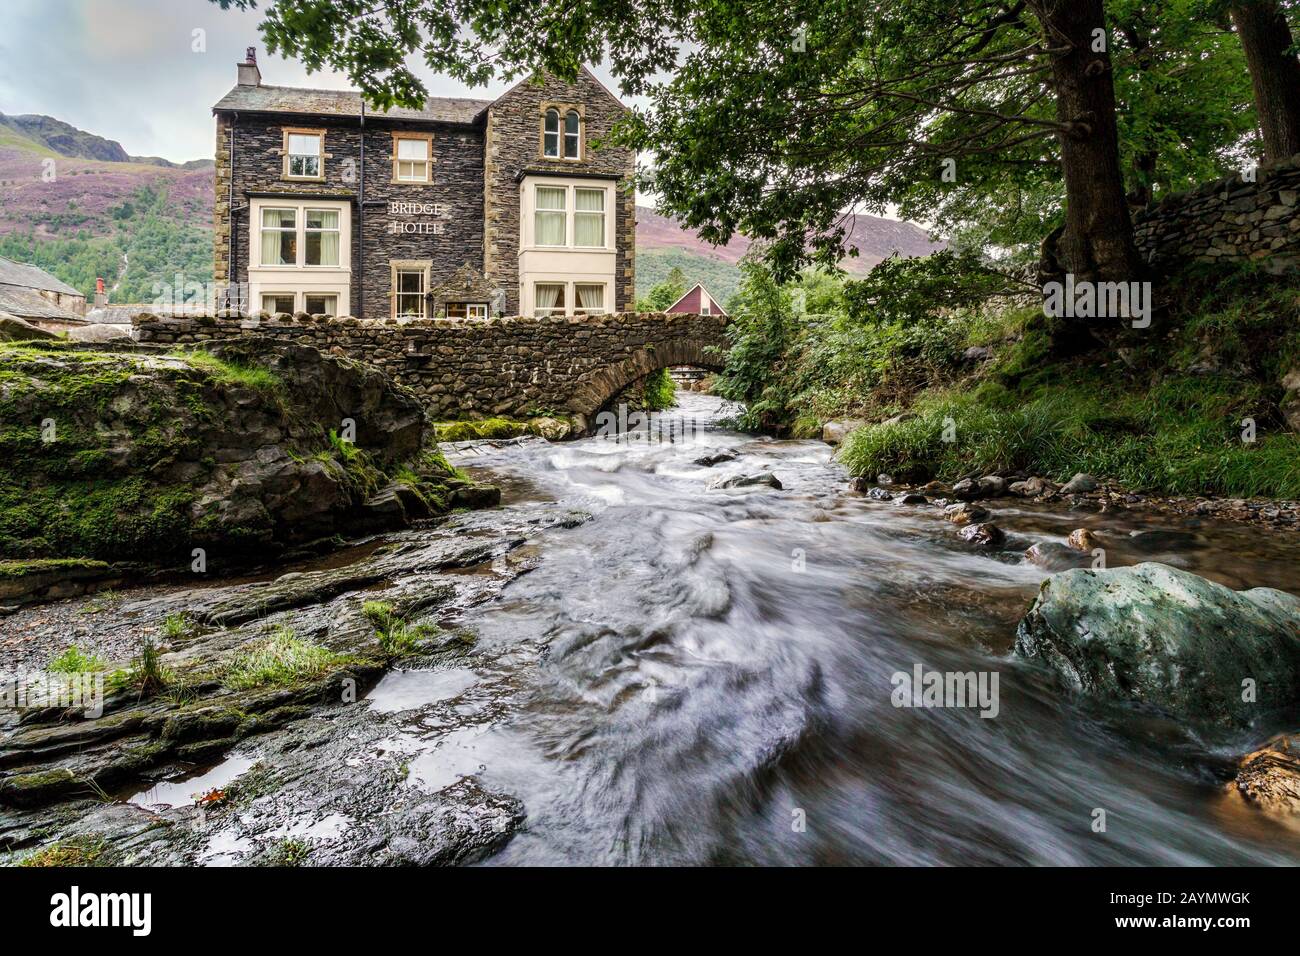 Un ruisseau qui passe devant le Bridge Hotel, situé entre le lac Buttermere et Crummock Water, Lake District National Park, Cumbria, Angleterre, Royaume-Uni Banque D'Images